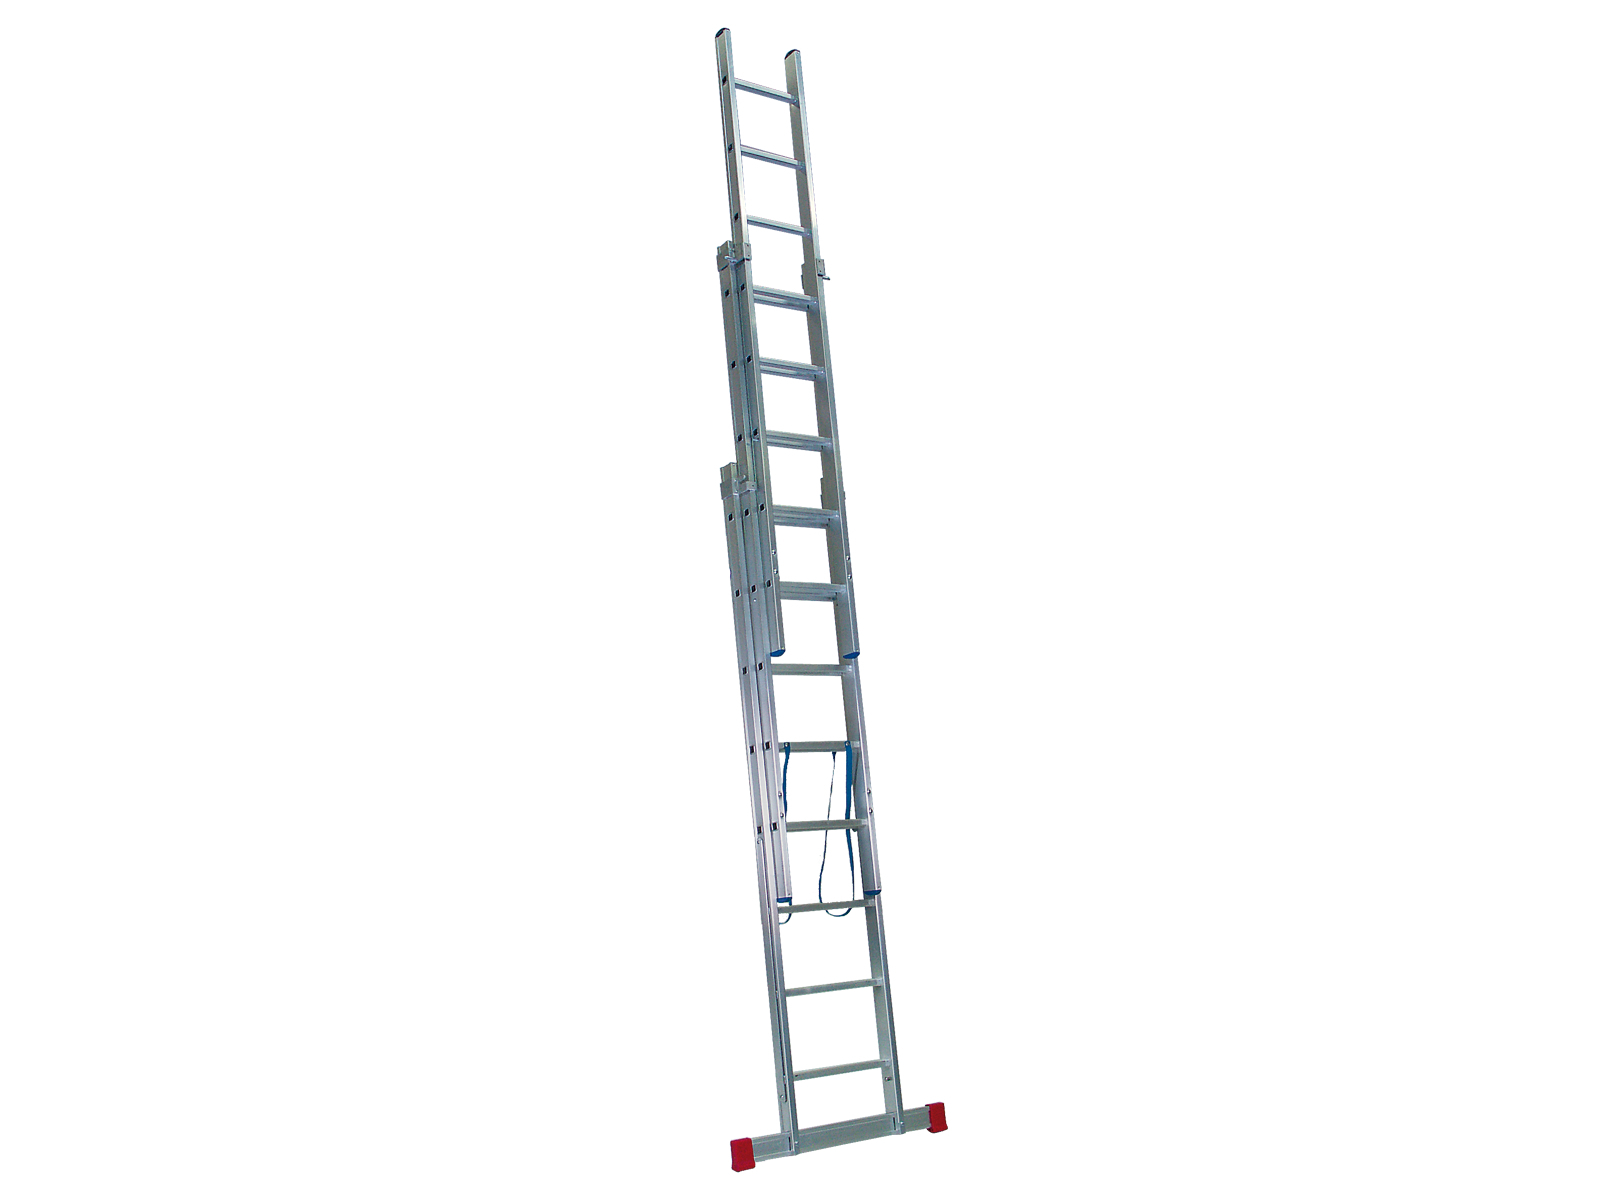 Mehrzweckleiter „Handwerkerausführung“ 3-teilig, 35/41/47 cm breit mit Aussteifungsstreben an den Leiternteilen, 3 x 6 Sprossen